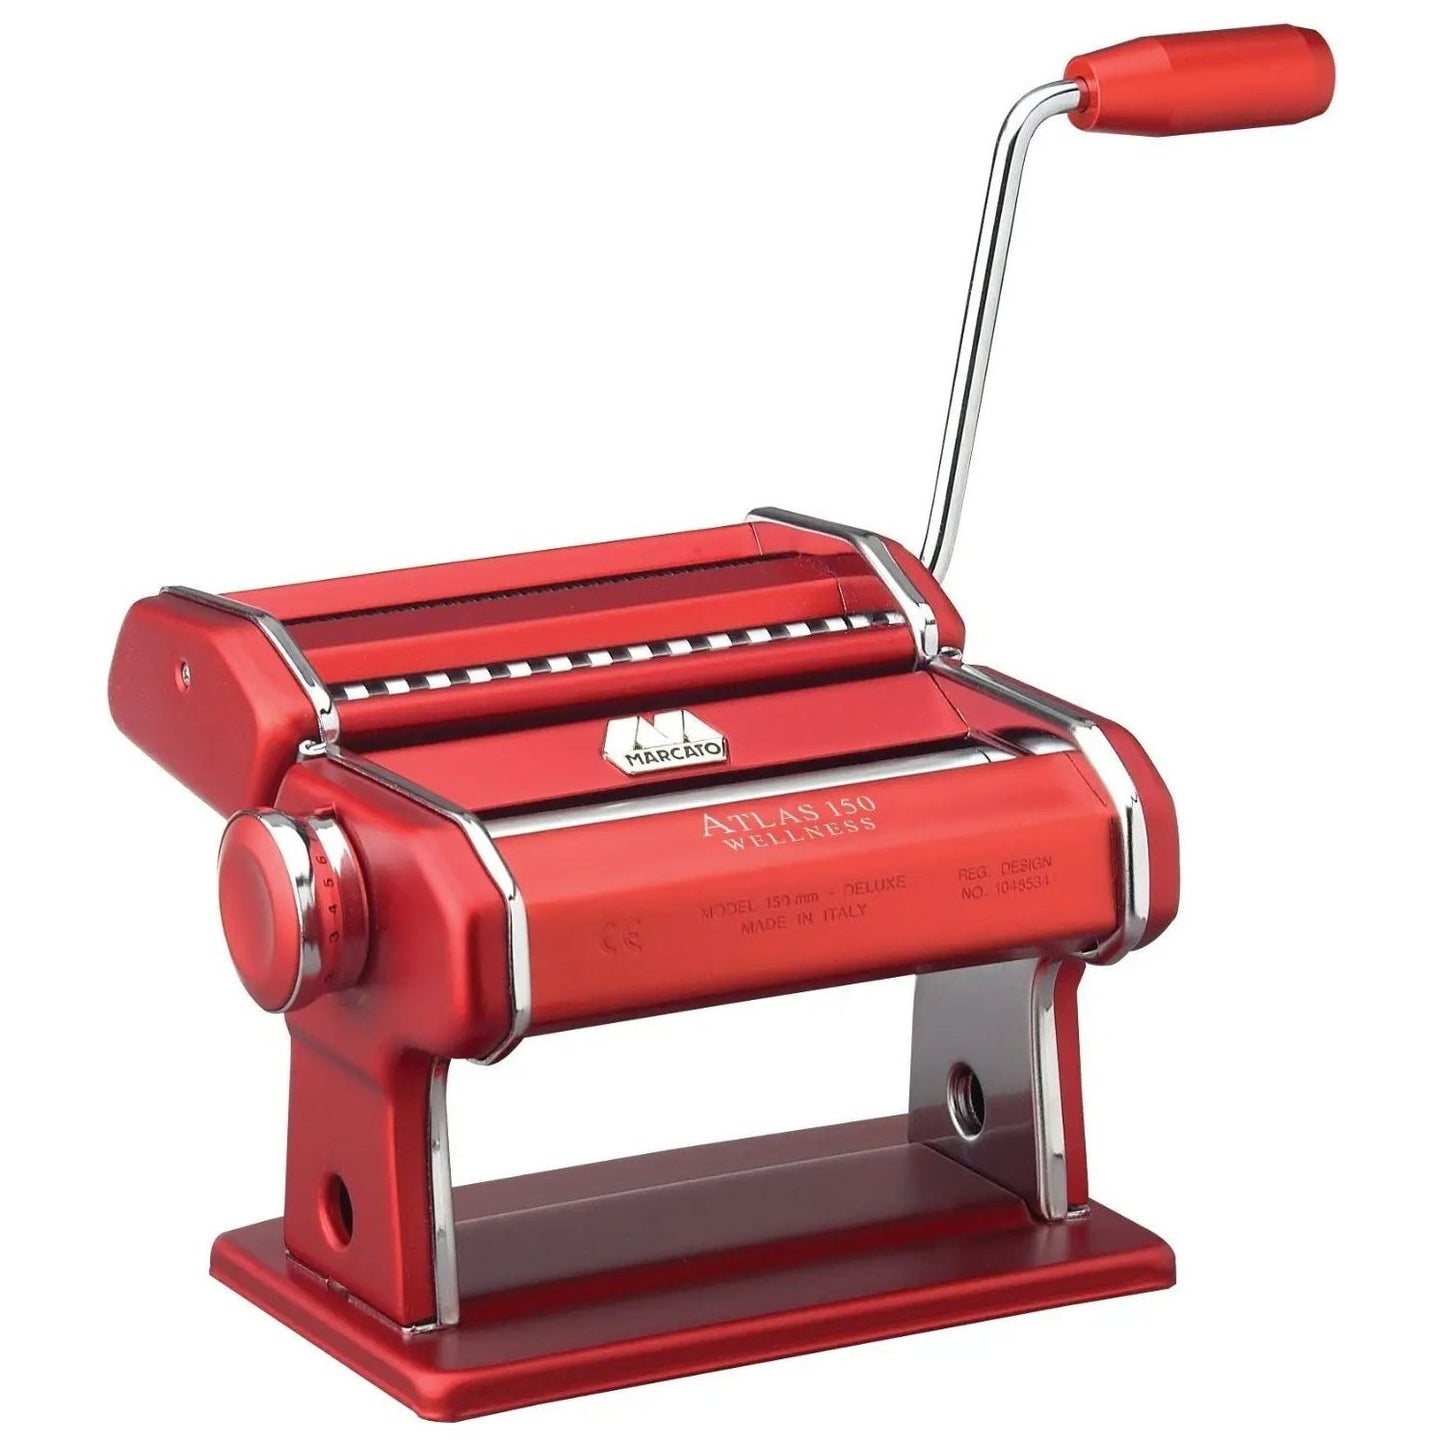 Marcato Atlas 150 Pasta Machine - Red – Browns Kitchen